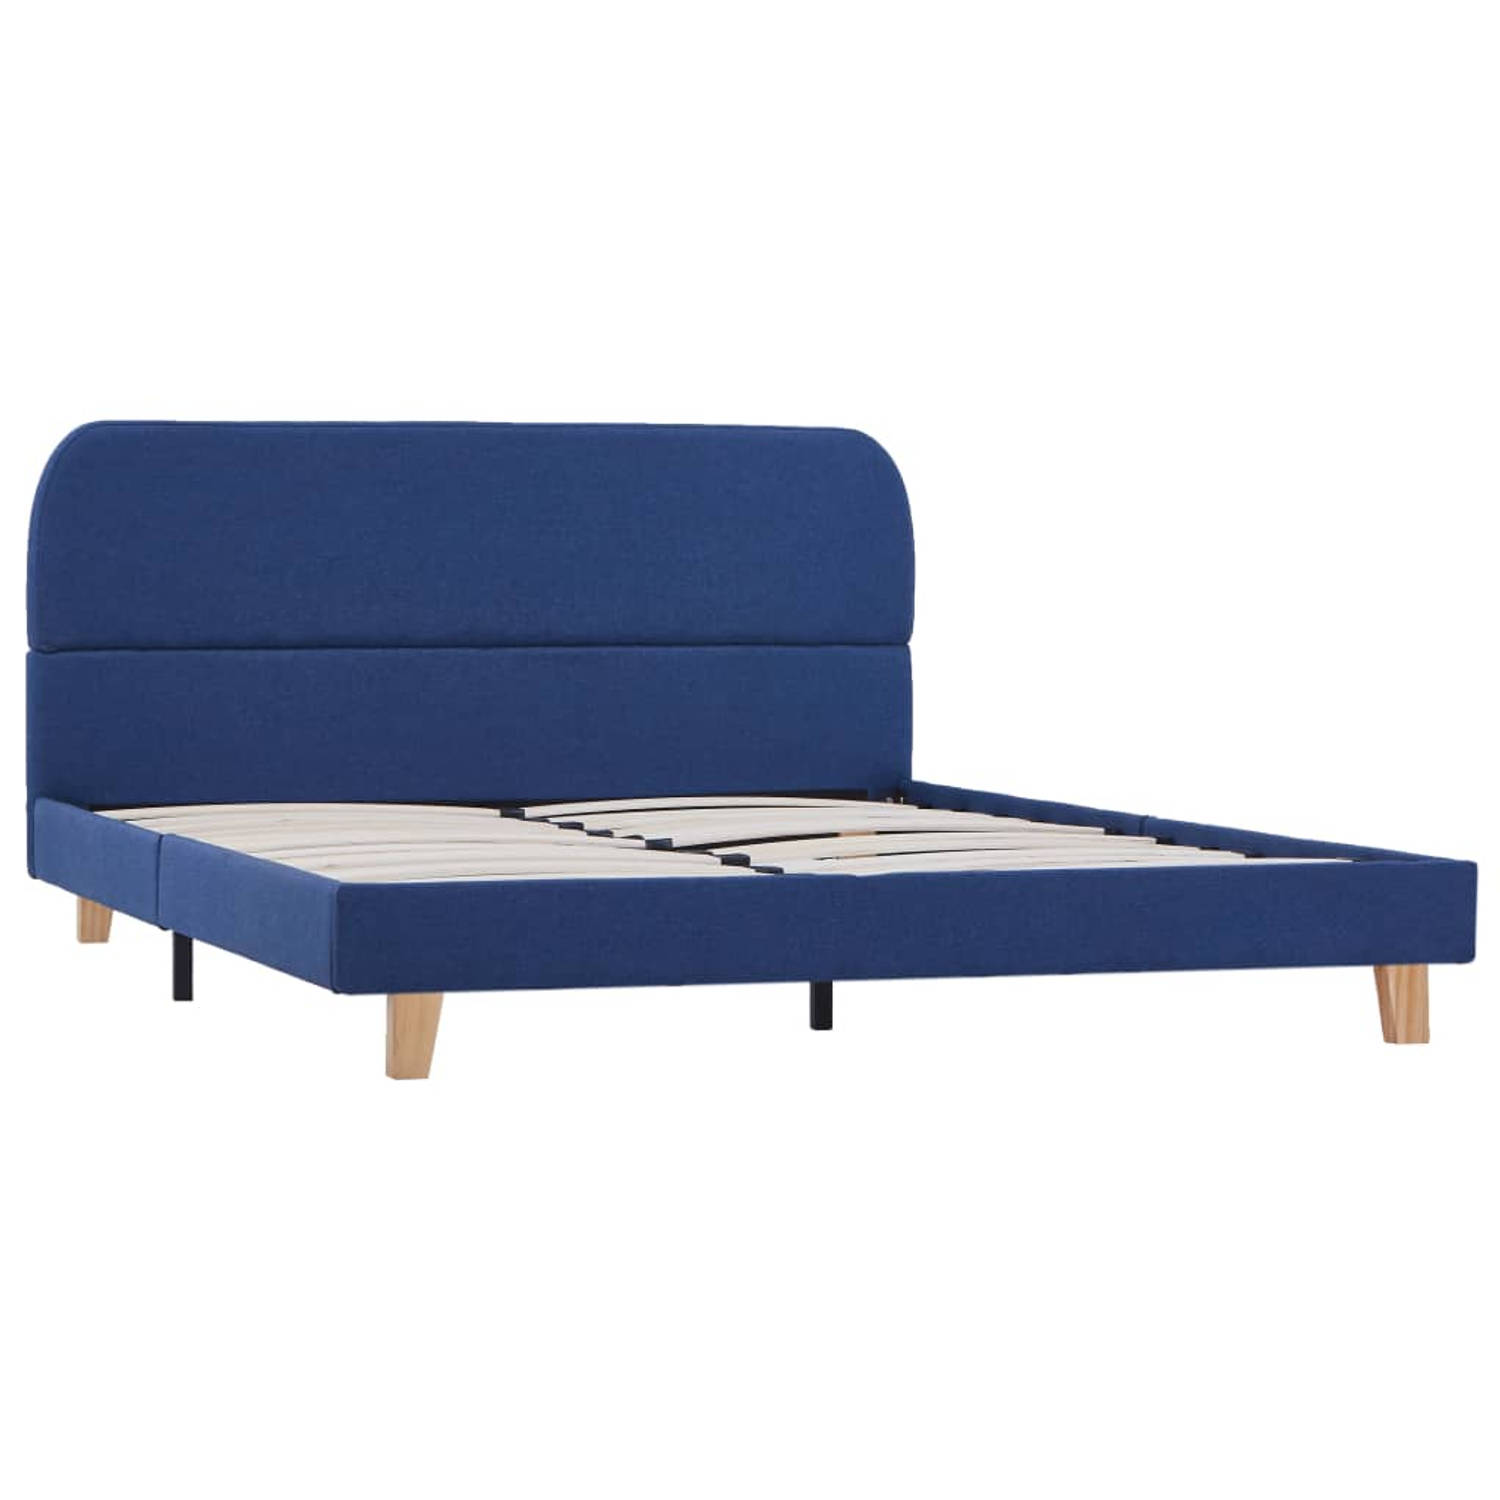 The Living Store Bedframe - Klassiek design - Hout en ijzer - Geschikt voor matras 140 x 200 cm - Blauw - 208 x 145 x 80 cm